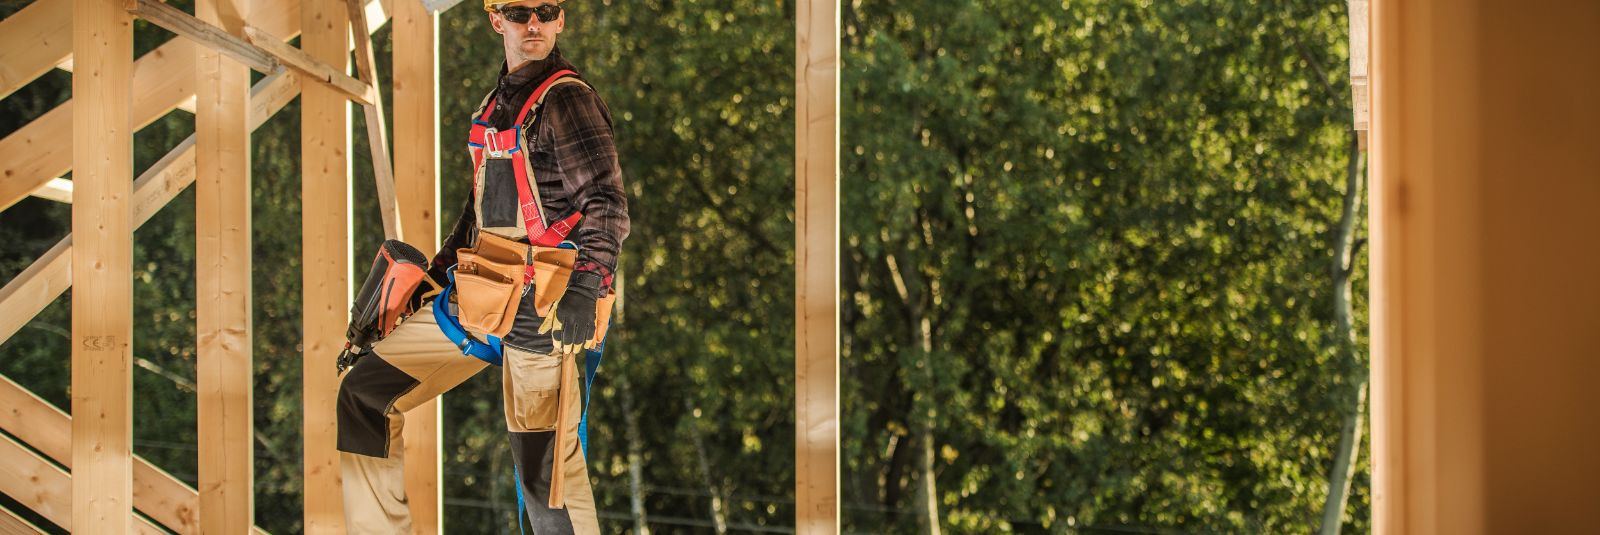 Martechno OÜ astub sammu kaugemale traditsioonilistest ehitusteenustest, olles puidutööde meistriteks, kes loovad erakordselt isikupäraseid ja funktsionaalseid 